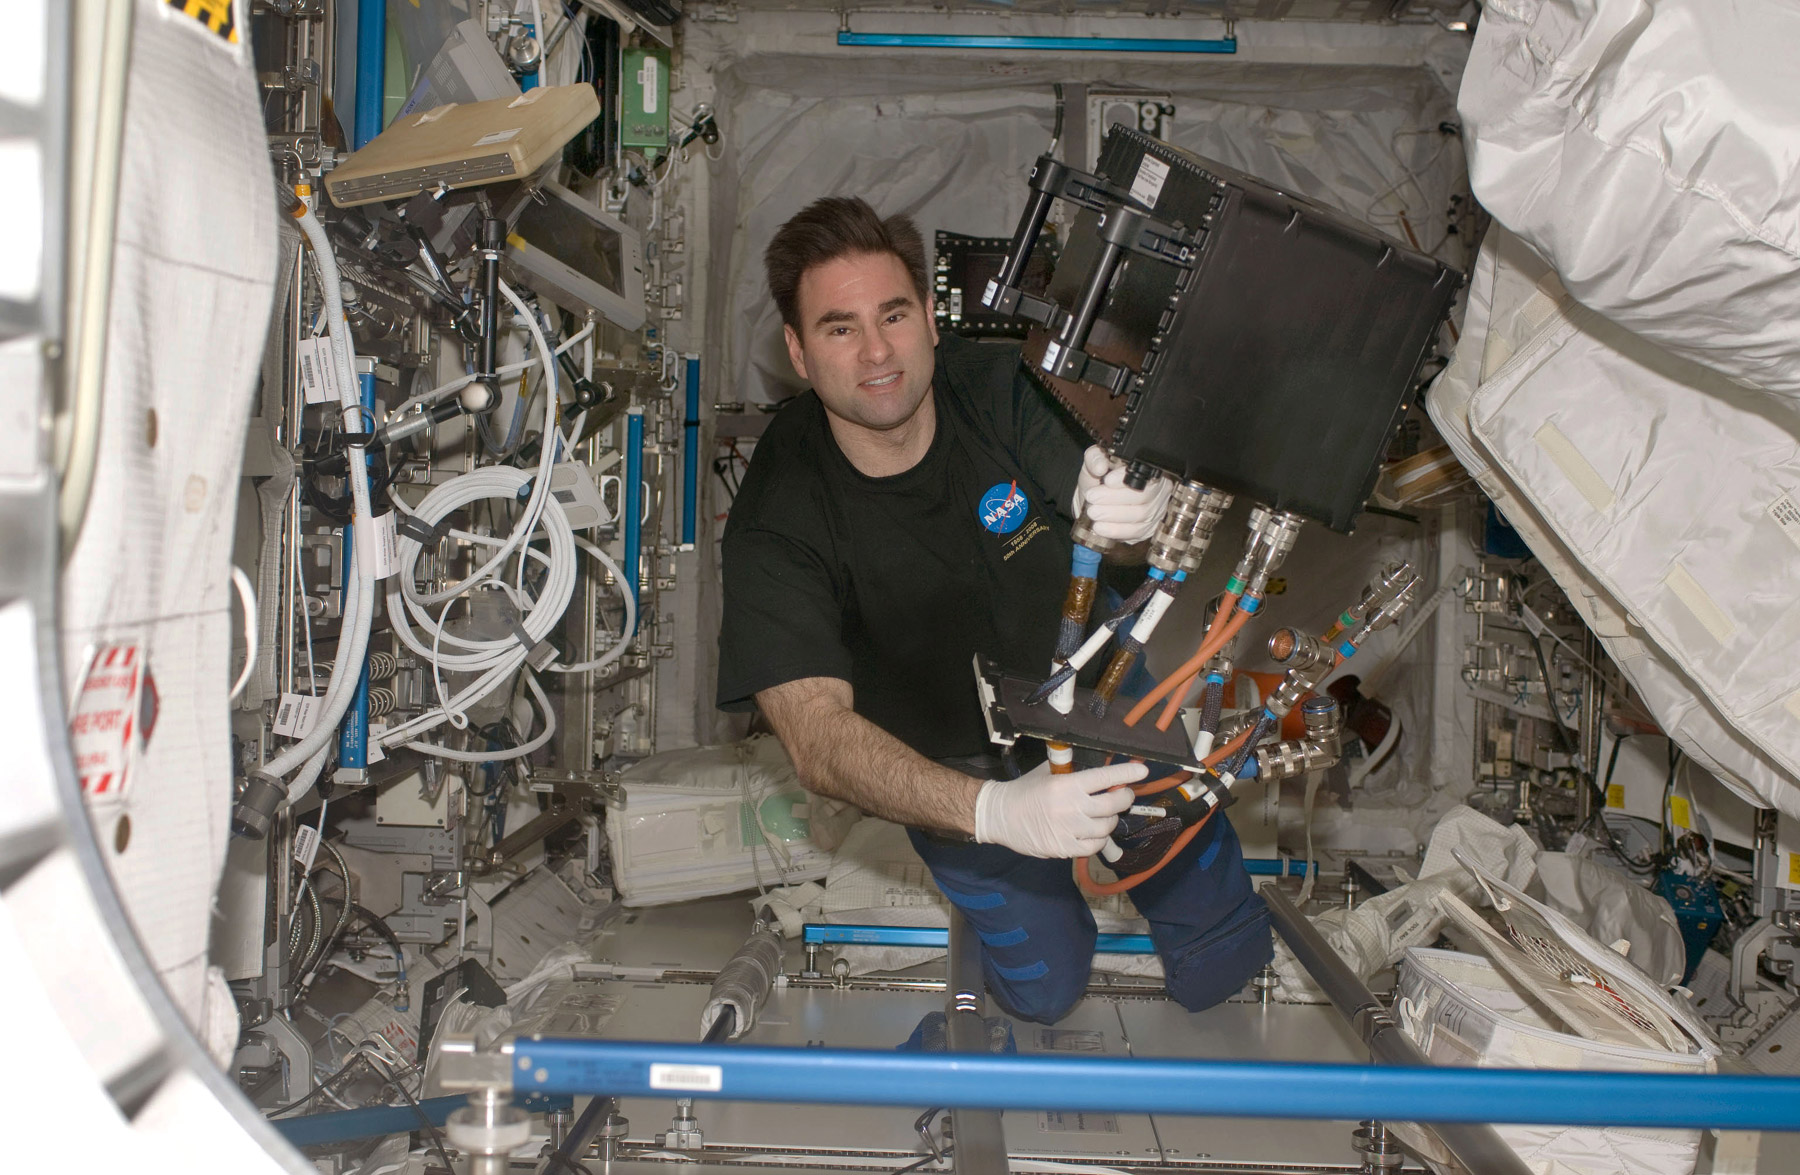 L'astronaute américain Greg Chamitoff installant Geoflow I dans le module Columbus lors de la première mission en Octobre 2008. Cette expérience avait pour objectif d'étudier la physique des fluides dans le noyau liquide de la Terre. © Nasa